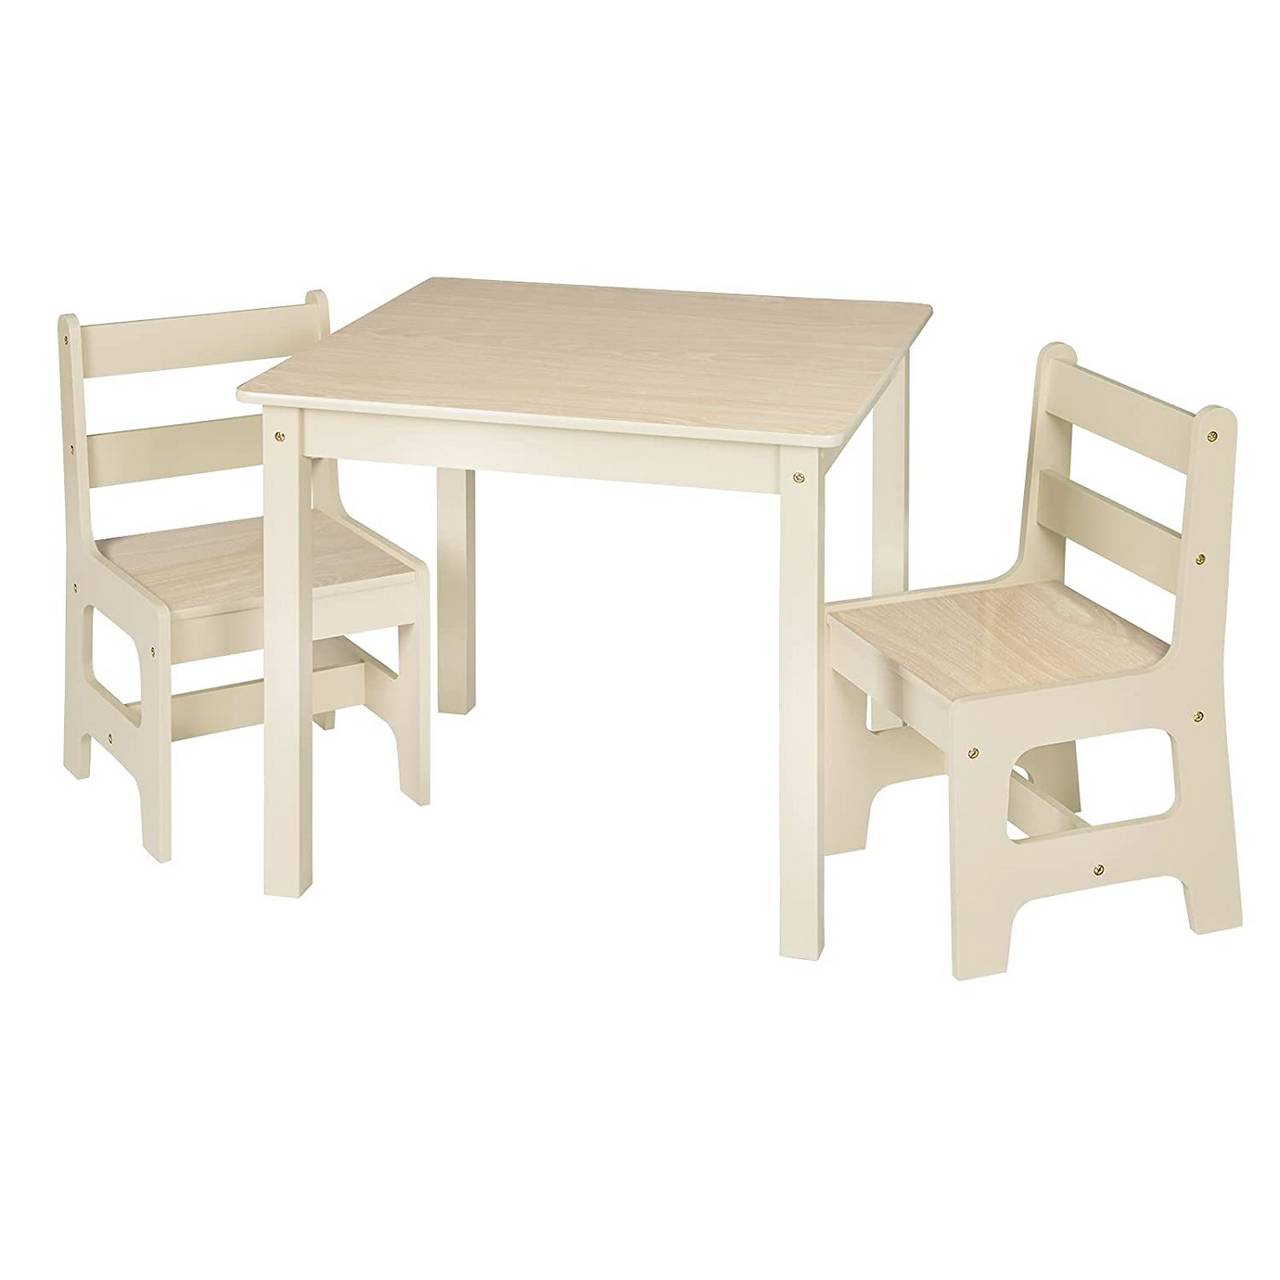 HOMCOM 3-TLG Kindersitzgruppe mit Kindertisch 2 Stühle für 3 Kindermöbel Kiefer+MDF Grau+Weiß 60 x 50 x 48 cm 